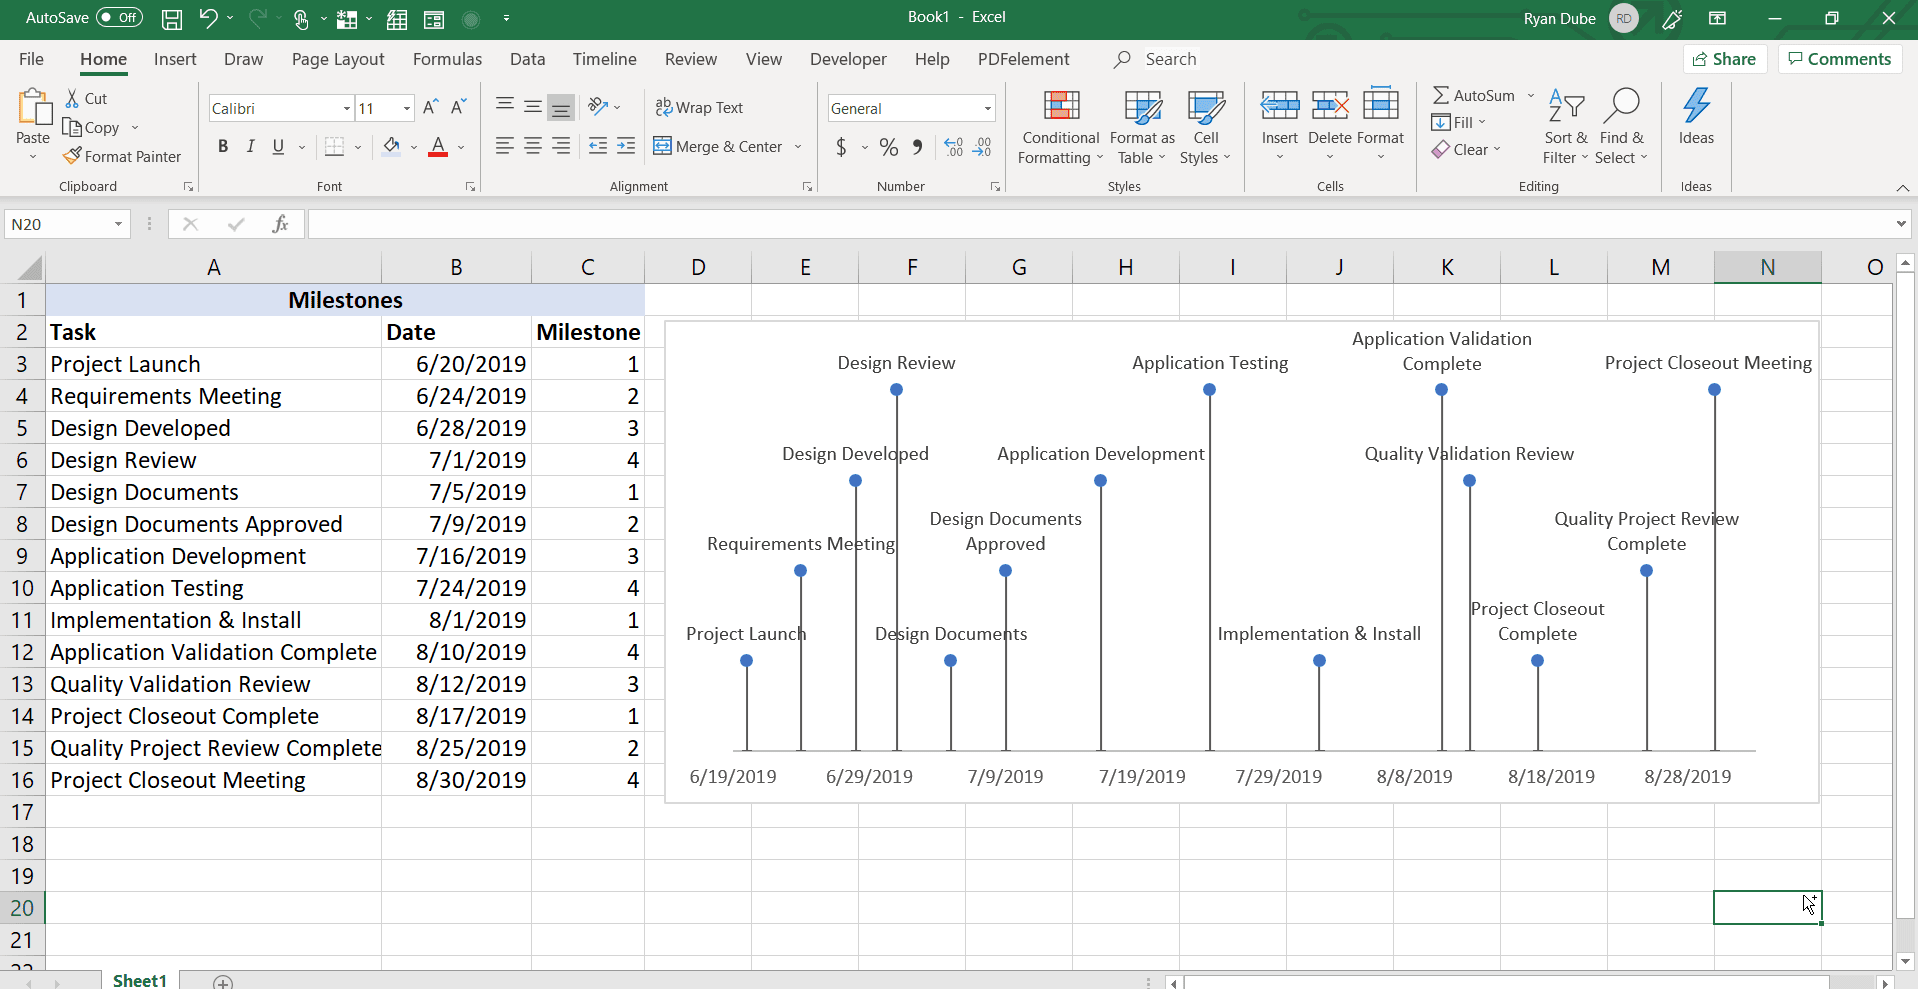 Скриншот заполненной временной шкалы в Excel